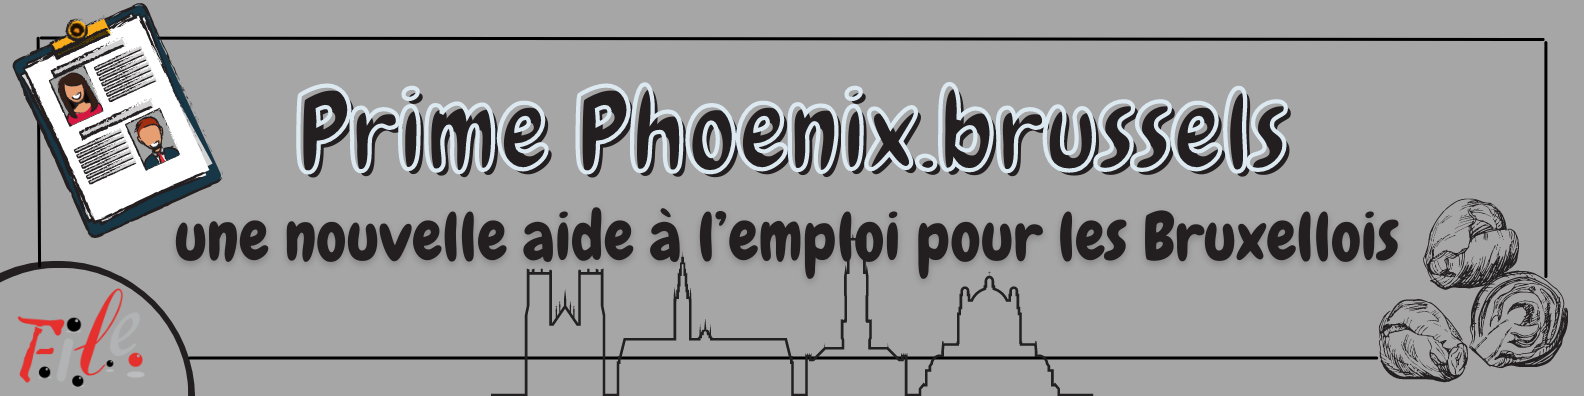 Bannière Prime Phoenix (2)